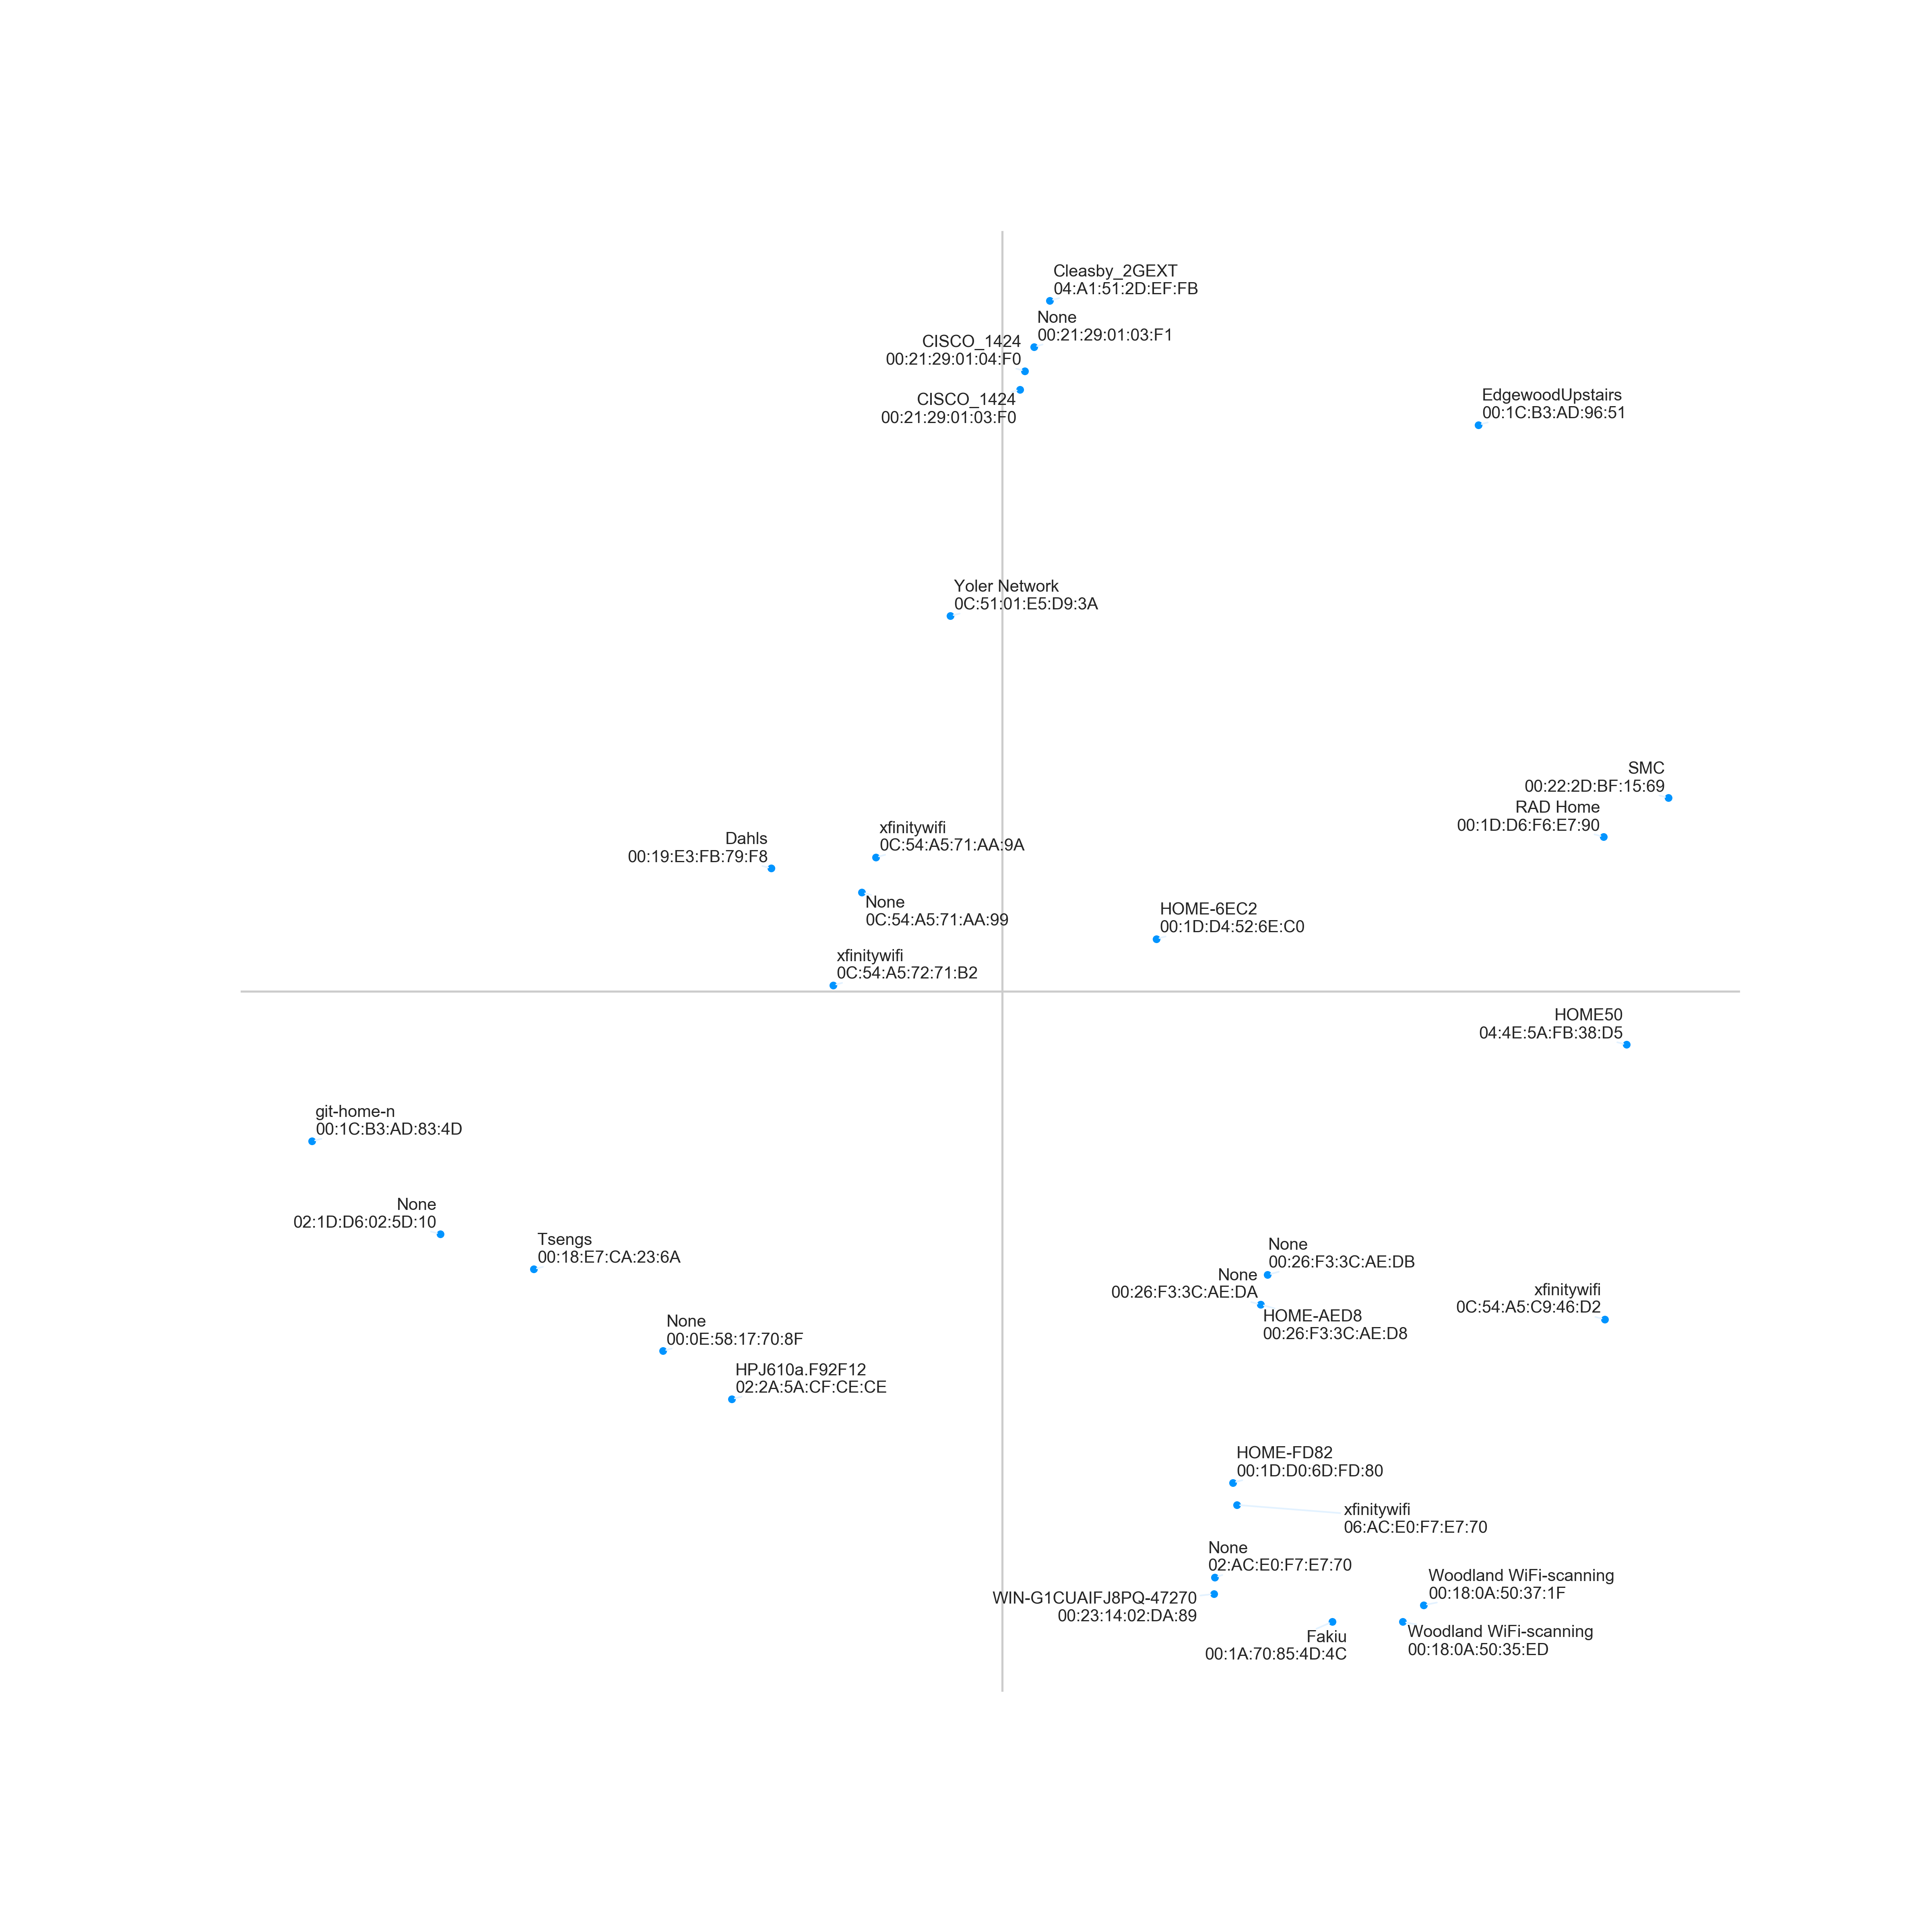 Geo-plot of Wi-Fi networks for Mark Zuckerberg&rsquo;s private pool in Palo Alto.